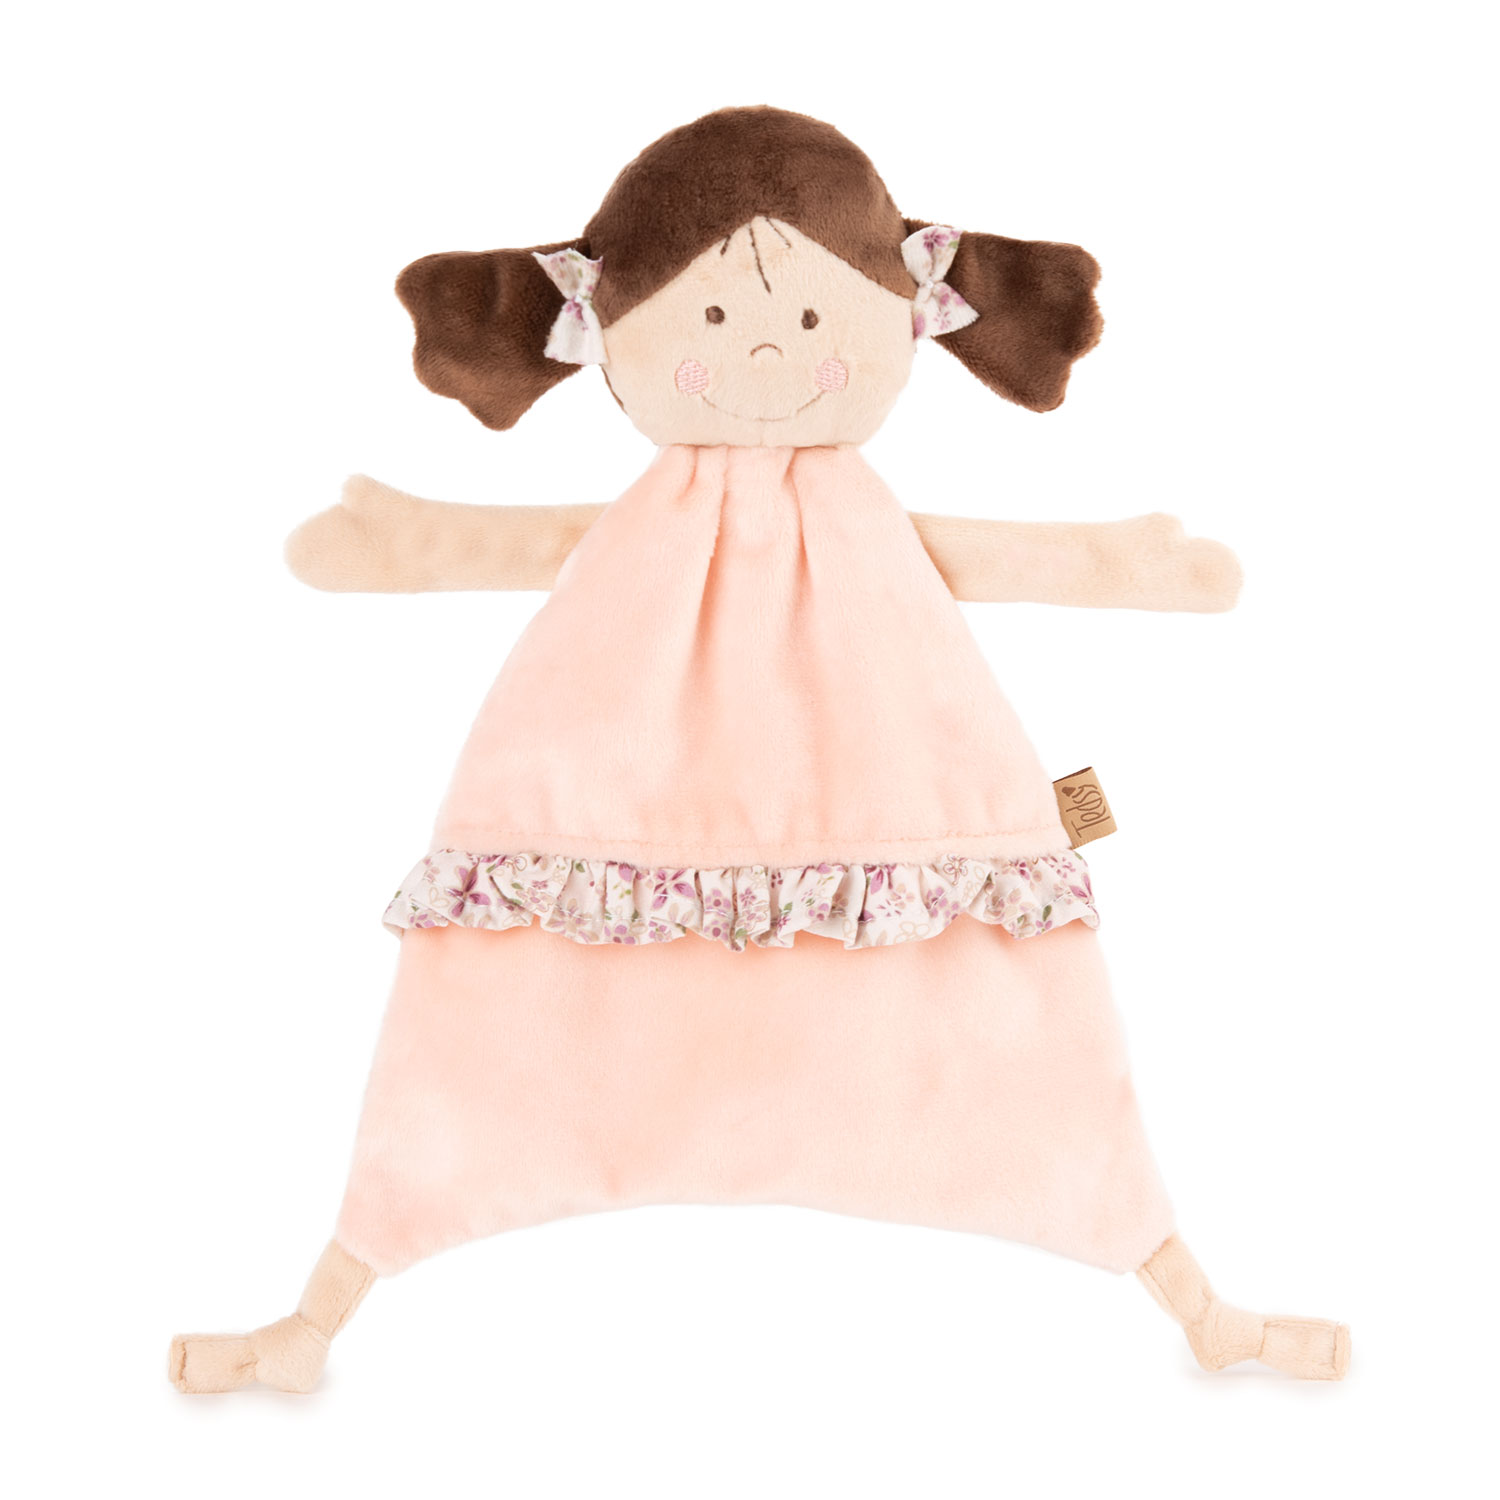 Baby soft toy doll Carmen